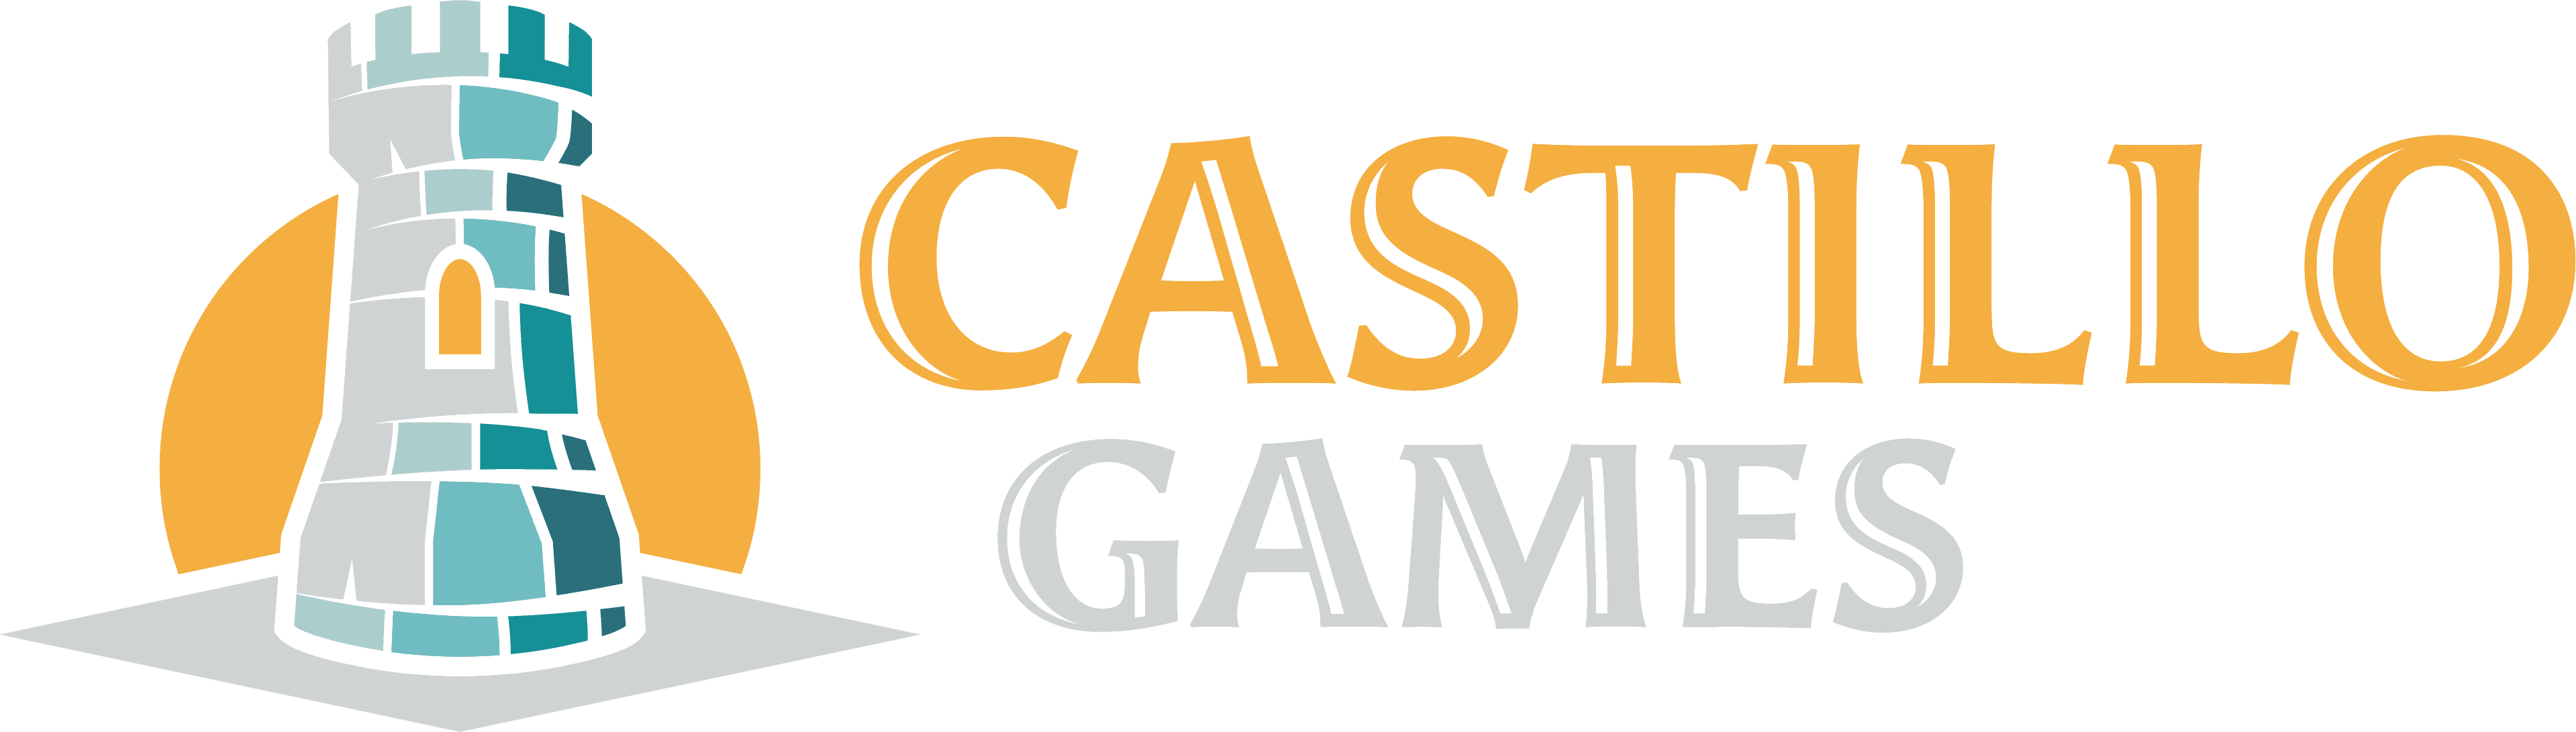 Castillo Games Logo Landscape